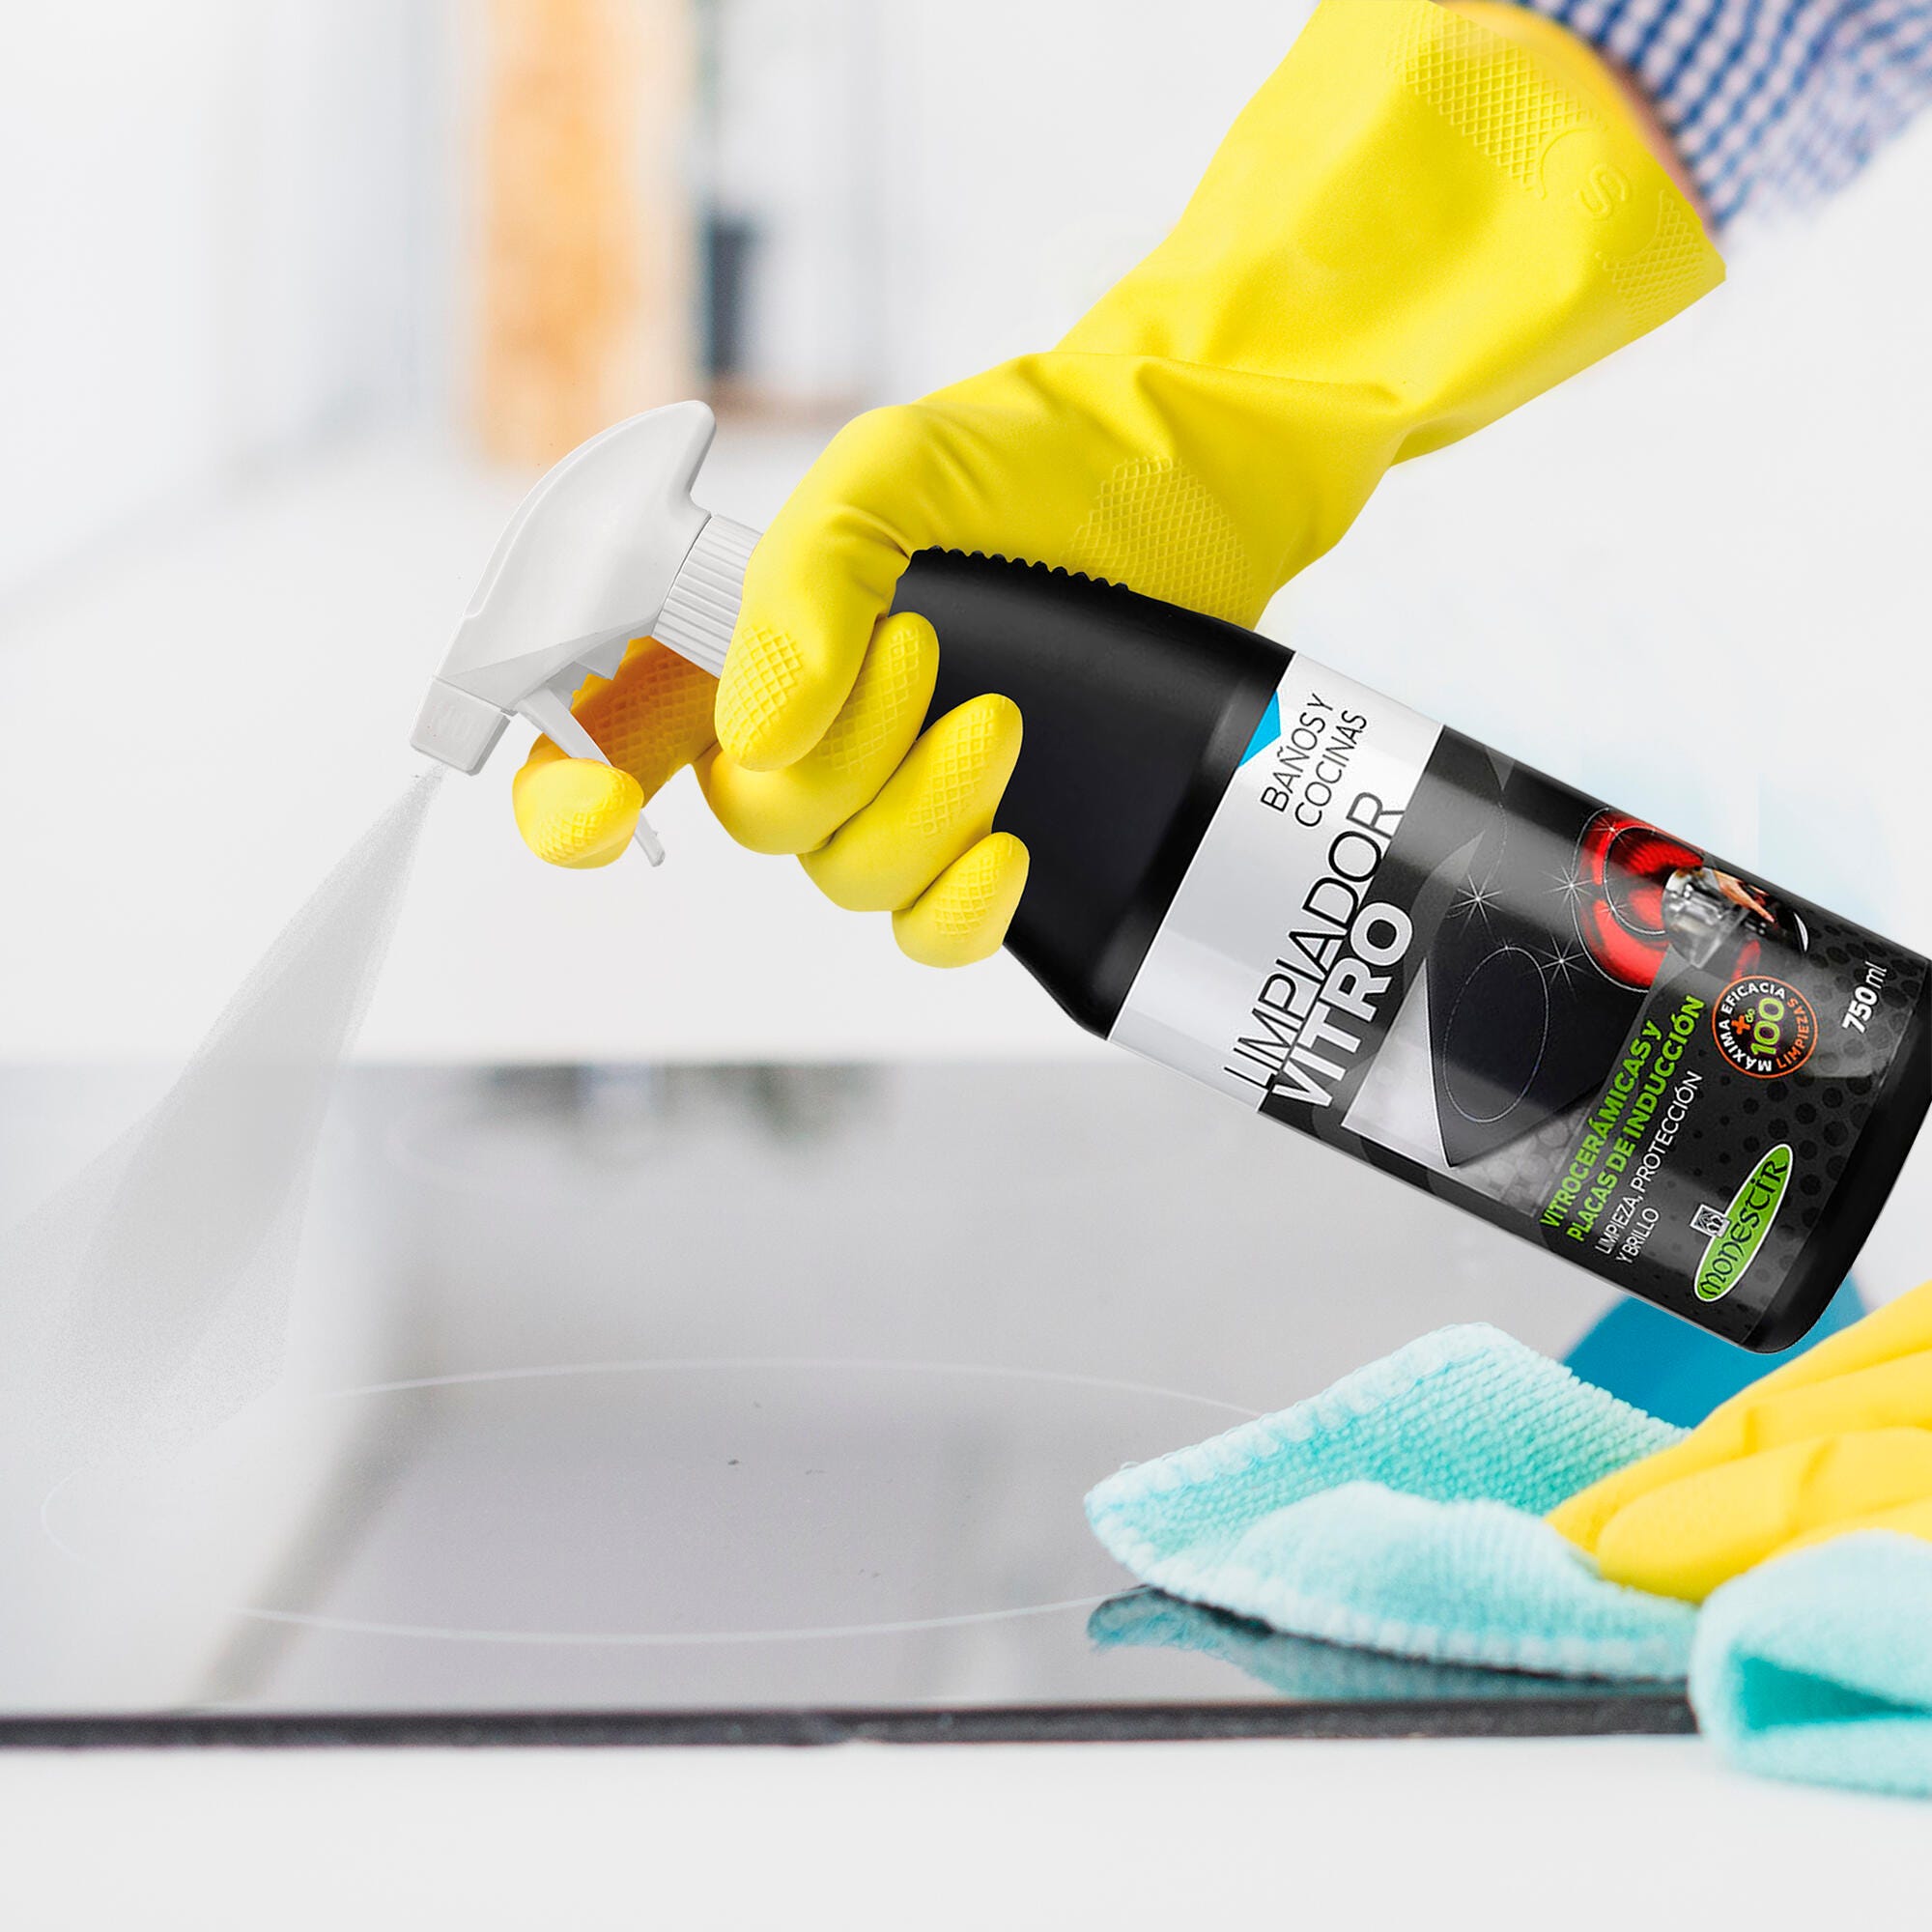 Los mejores productos que puedes comprar para limpiar la vitro